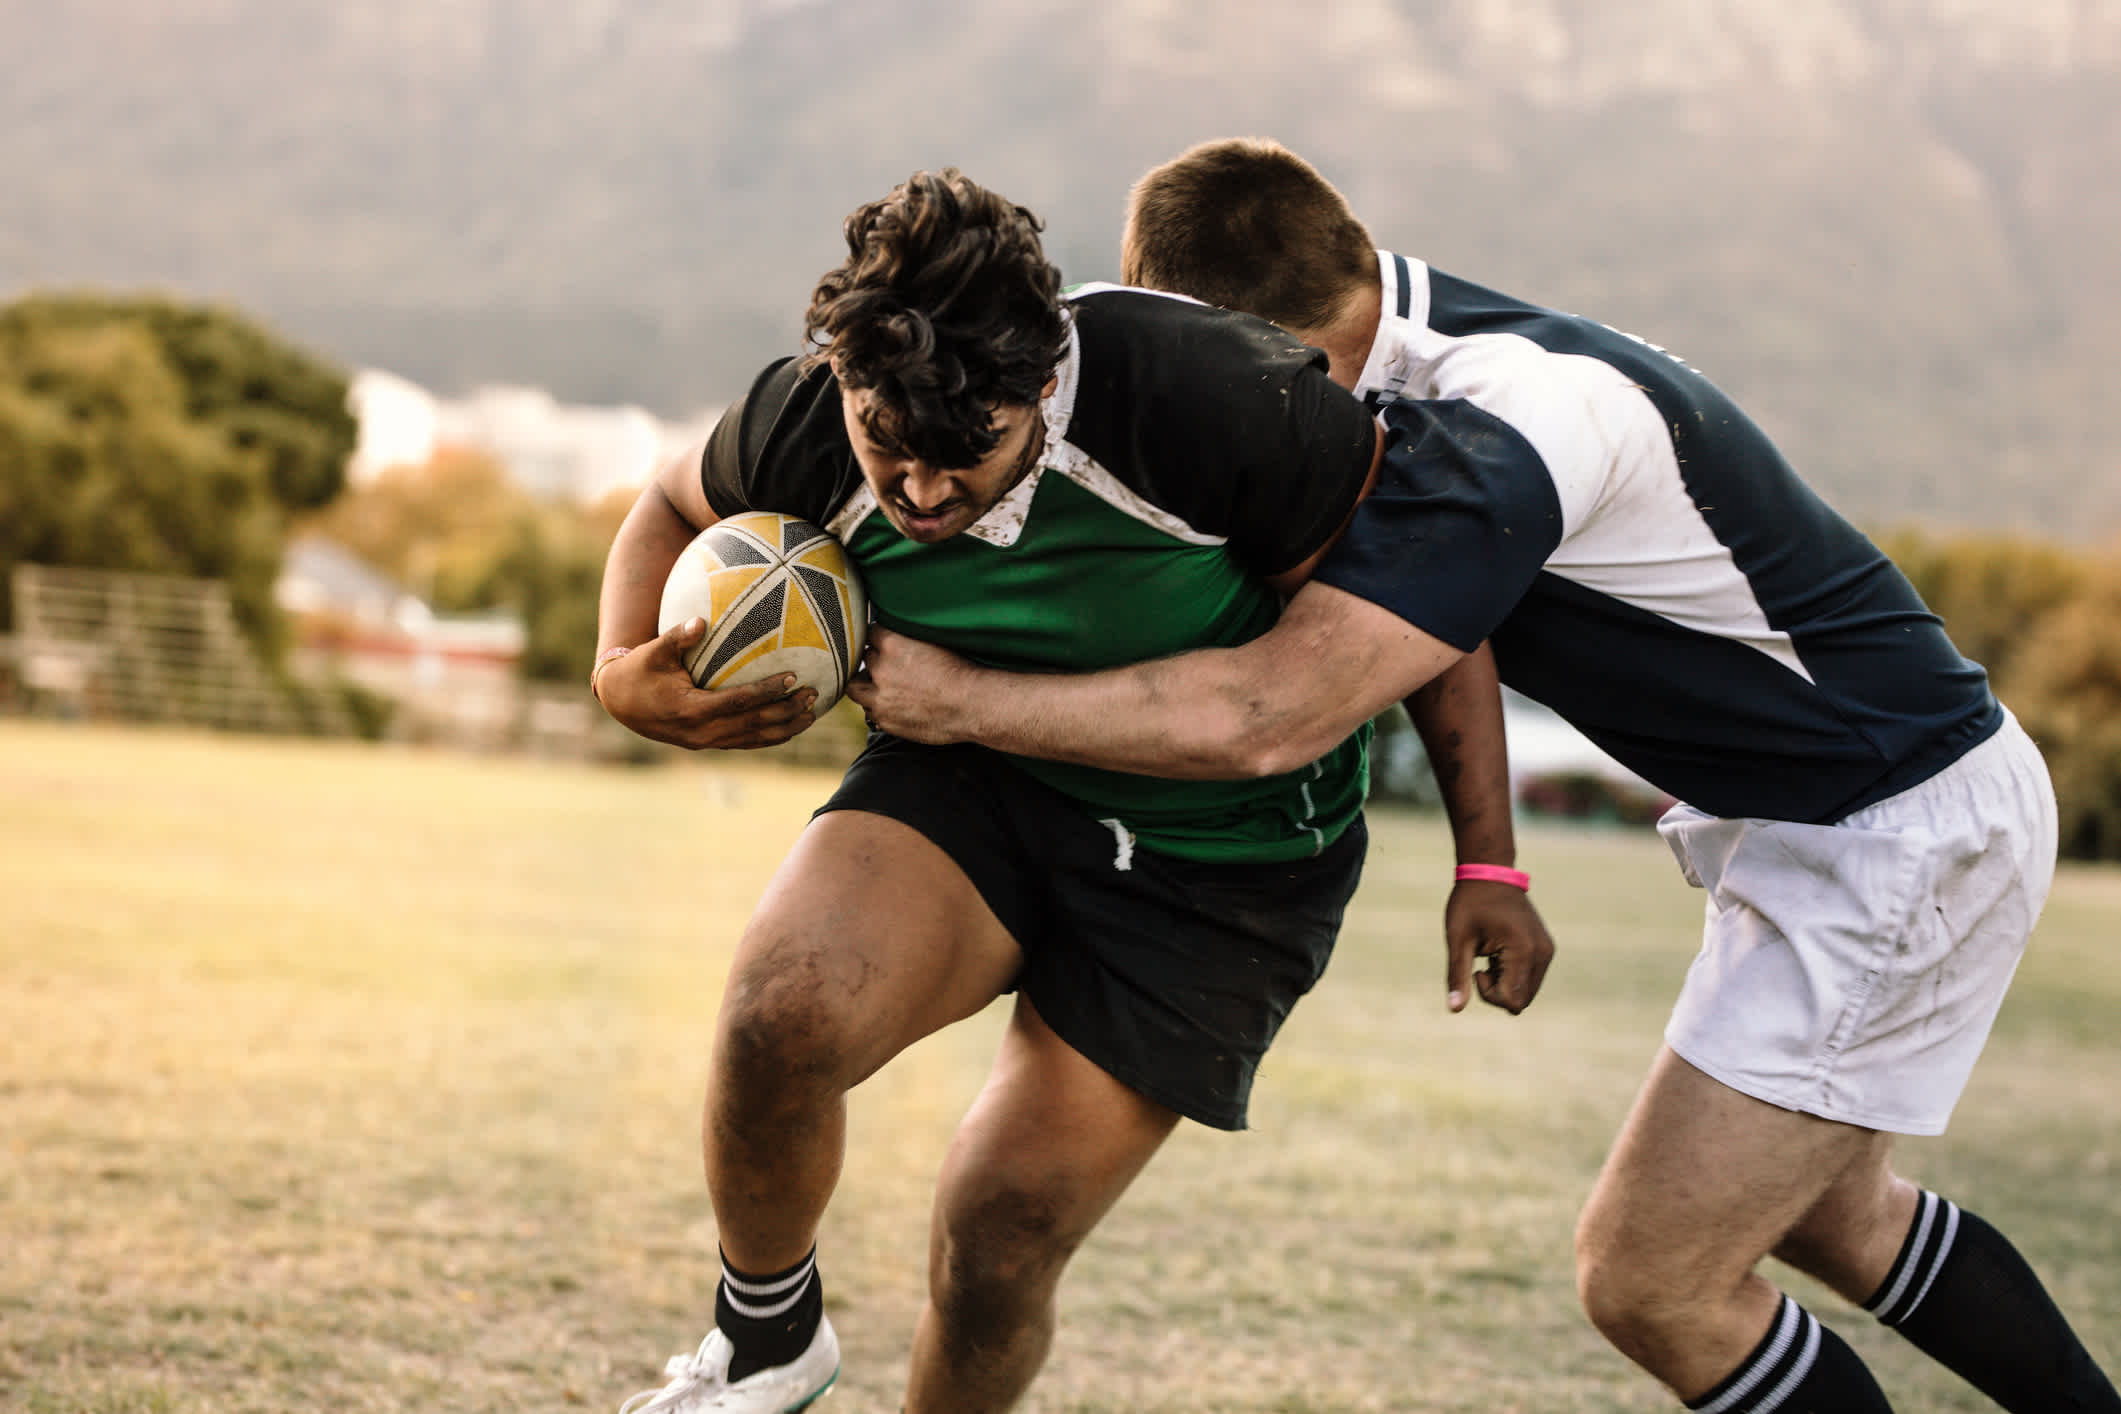 Besuchen Sie auf Ihrer Neuseeland-Reise ein Rugbyspiel vor Ort.